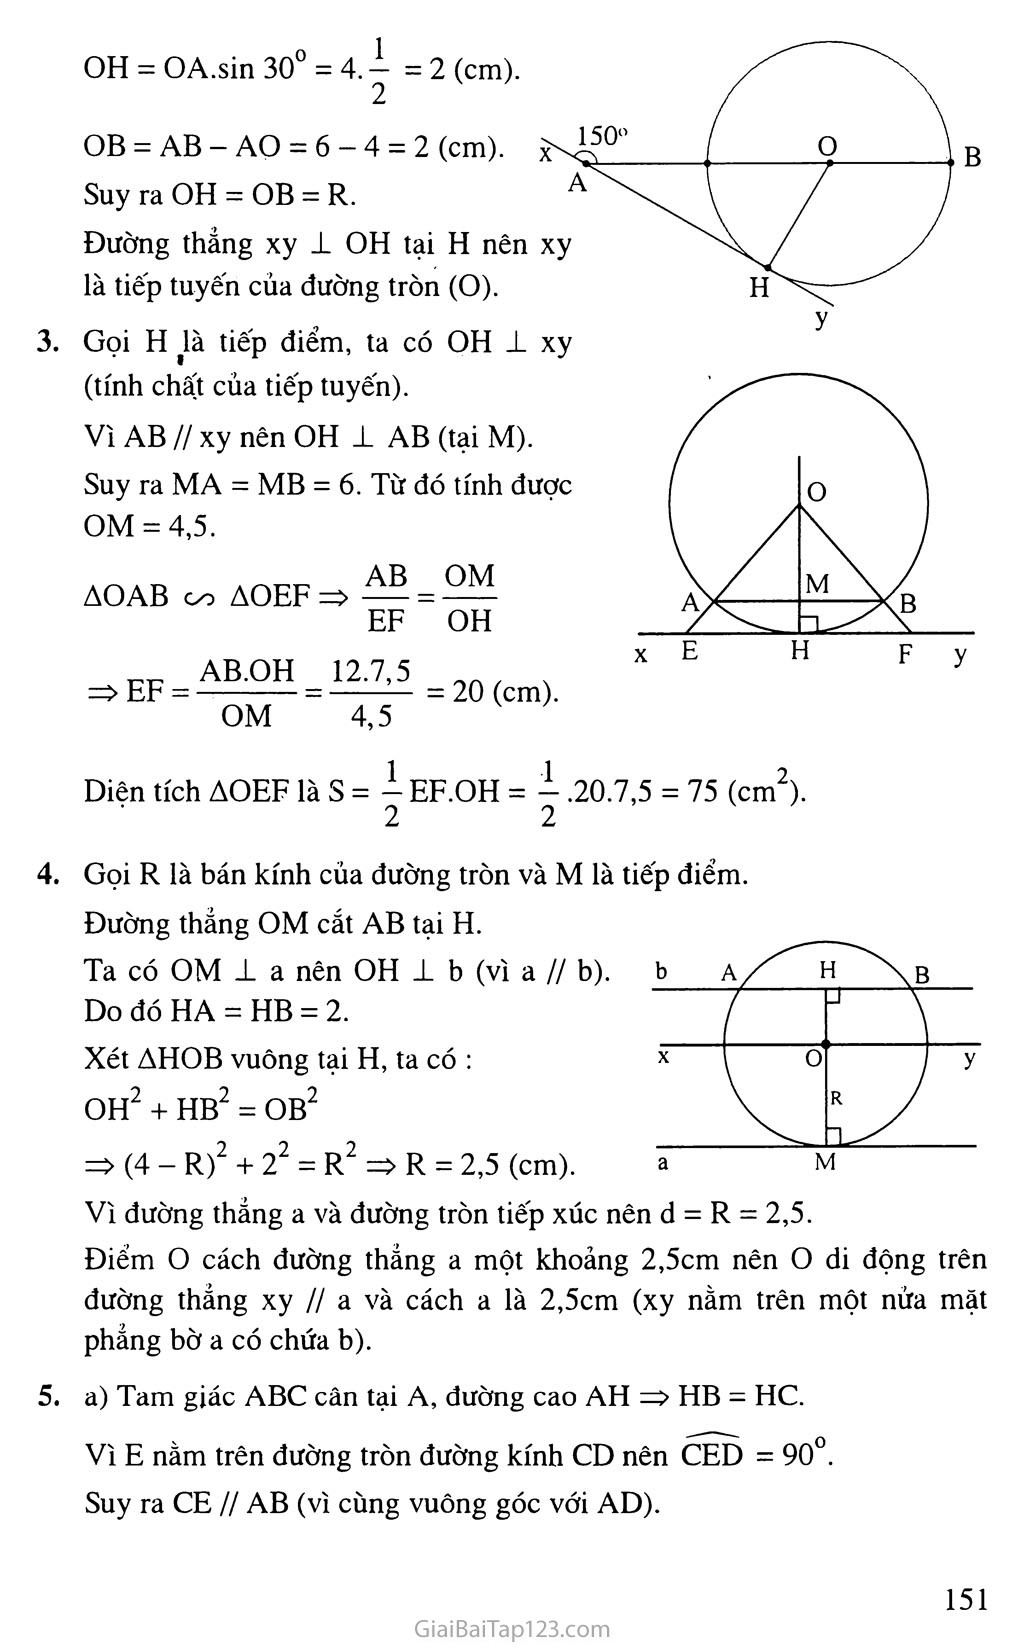 Bài 4. Vi trí tương đối của đường thẳng và đường tròn + 
Bài 5. Dấu hiệu nhận biết tiếp tuyến của đường tròn trang 6